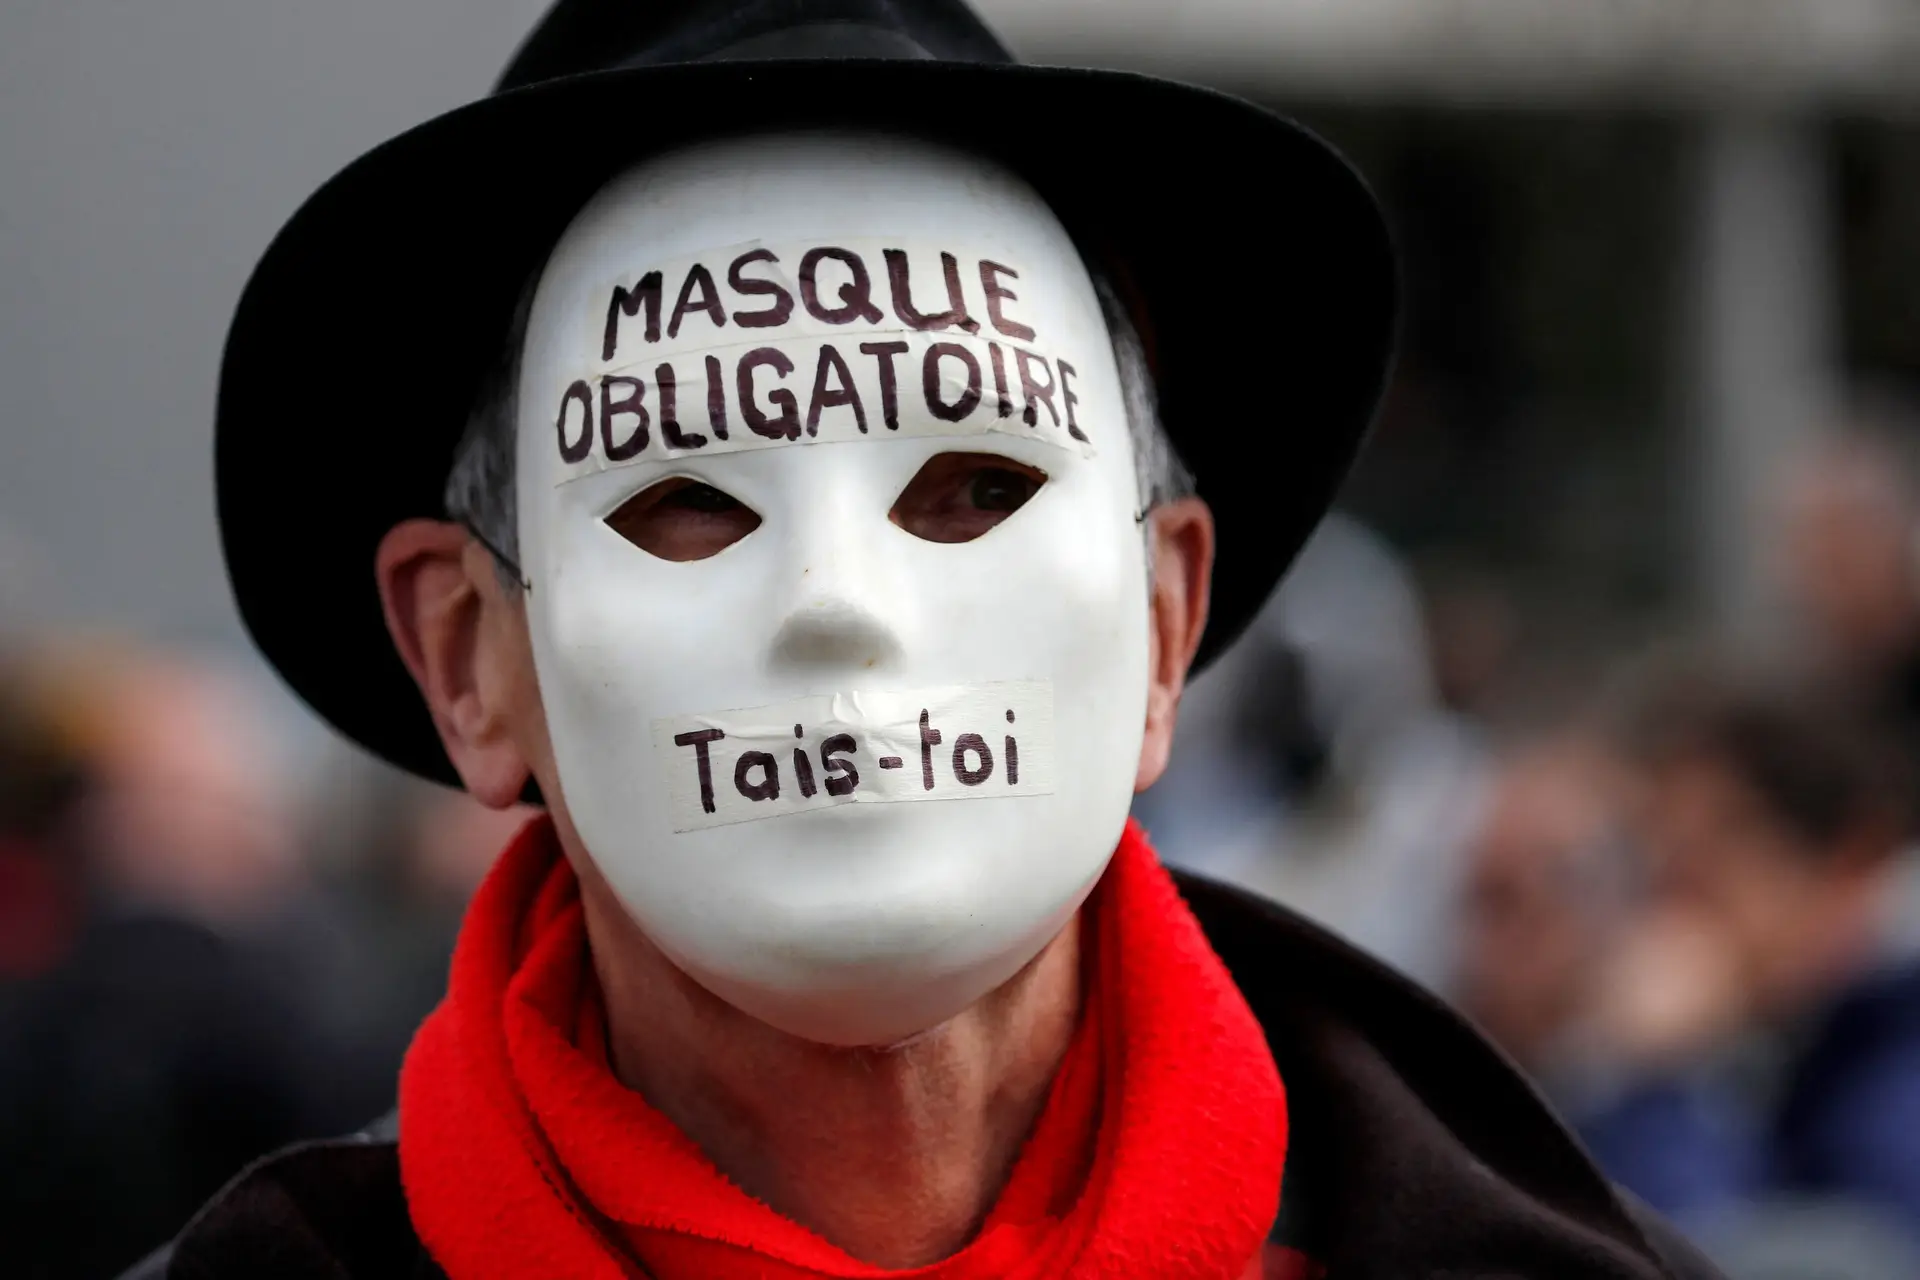 “Máscara obrigatória, cala-te”, denuncia este manifestante, num protesto na Suíça